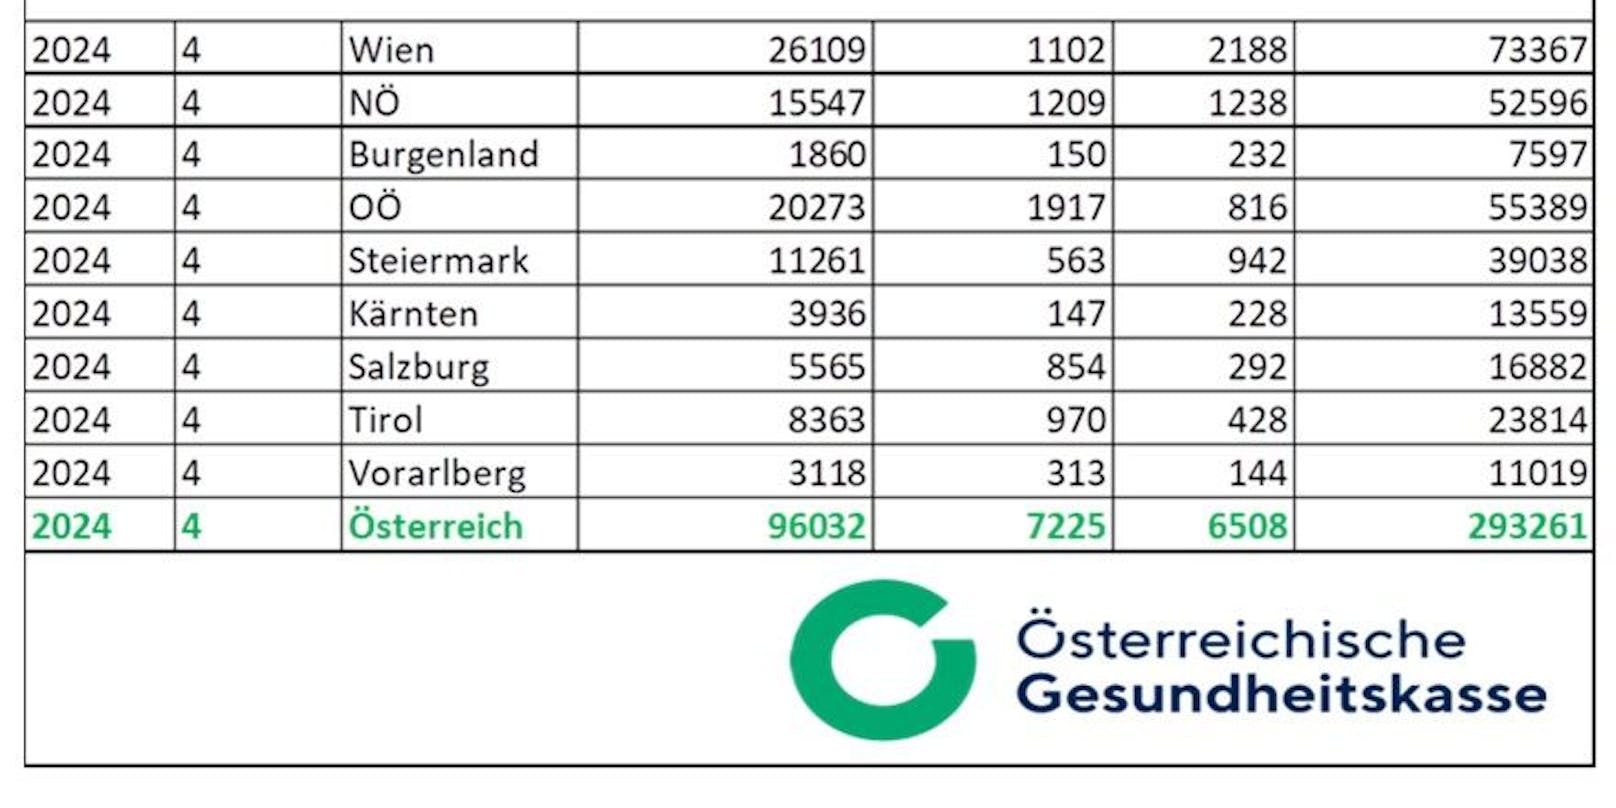 Die neuesten Zahlen zeigen die hohe Virusaktivität in Österreich. In der linken Spalte ist die Zahl der grippalen Infekte angegeben, daneben die Fälle echter Grippe (in OÖ z.B. 1.917), daneben die Covid-Fälle und ganz rechts die Zahl der Krankenstandsmeldungen insgesamt.